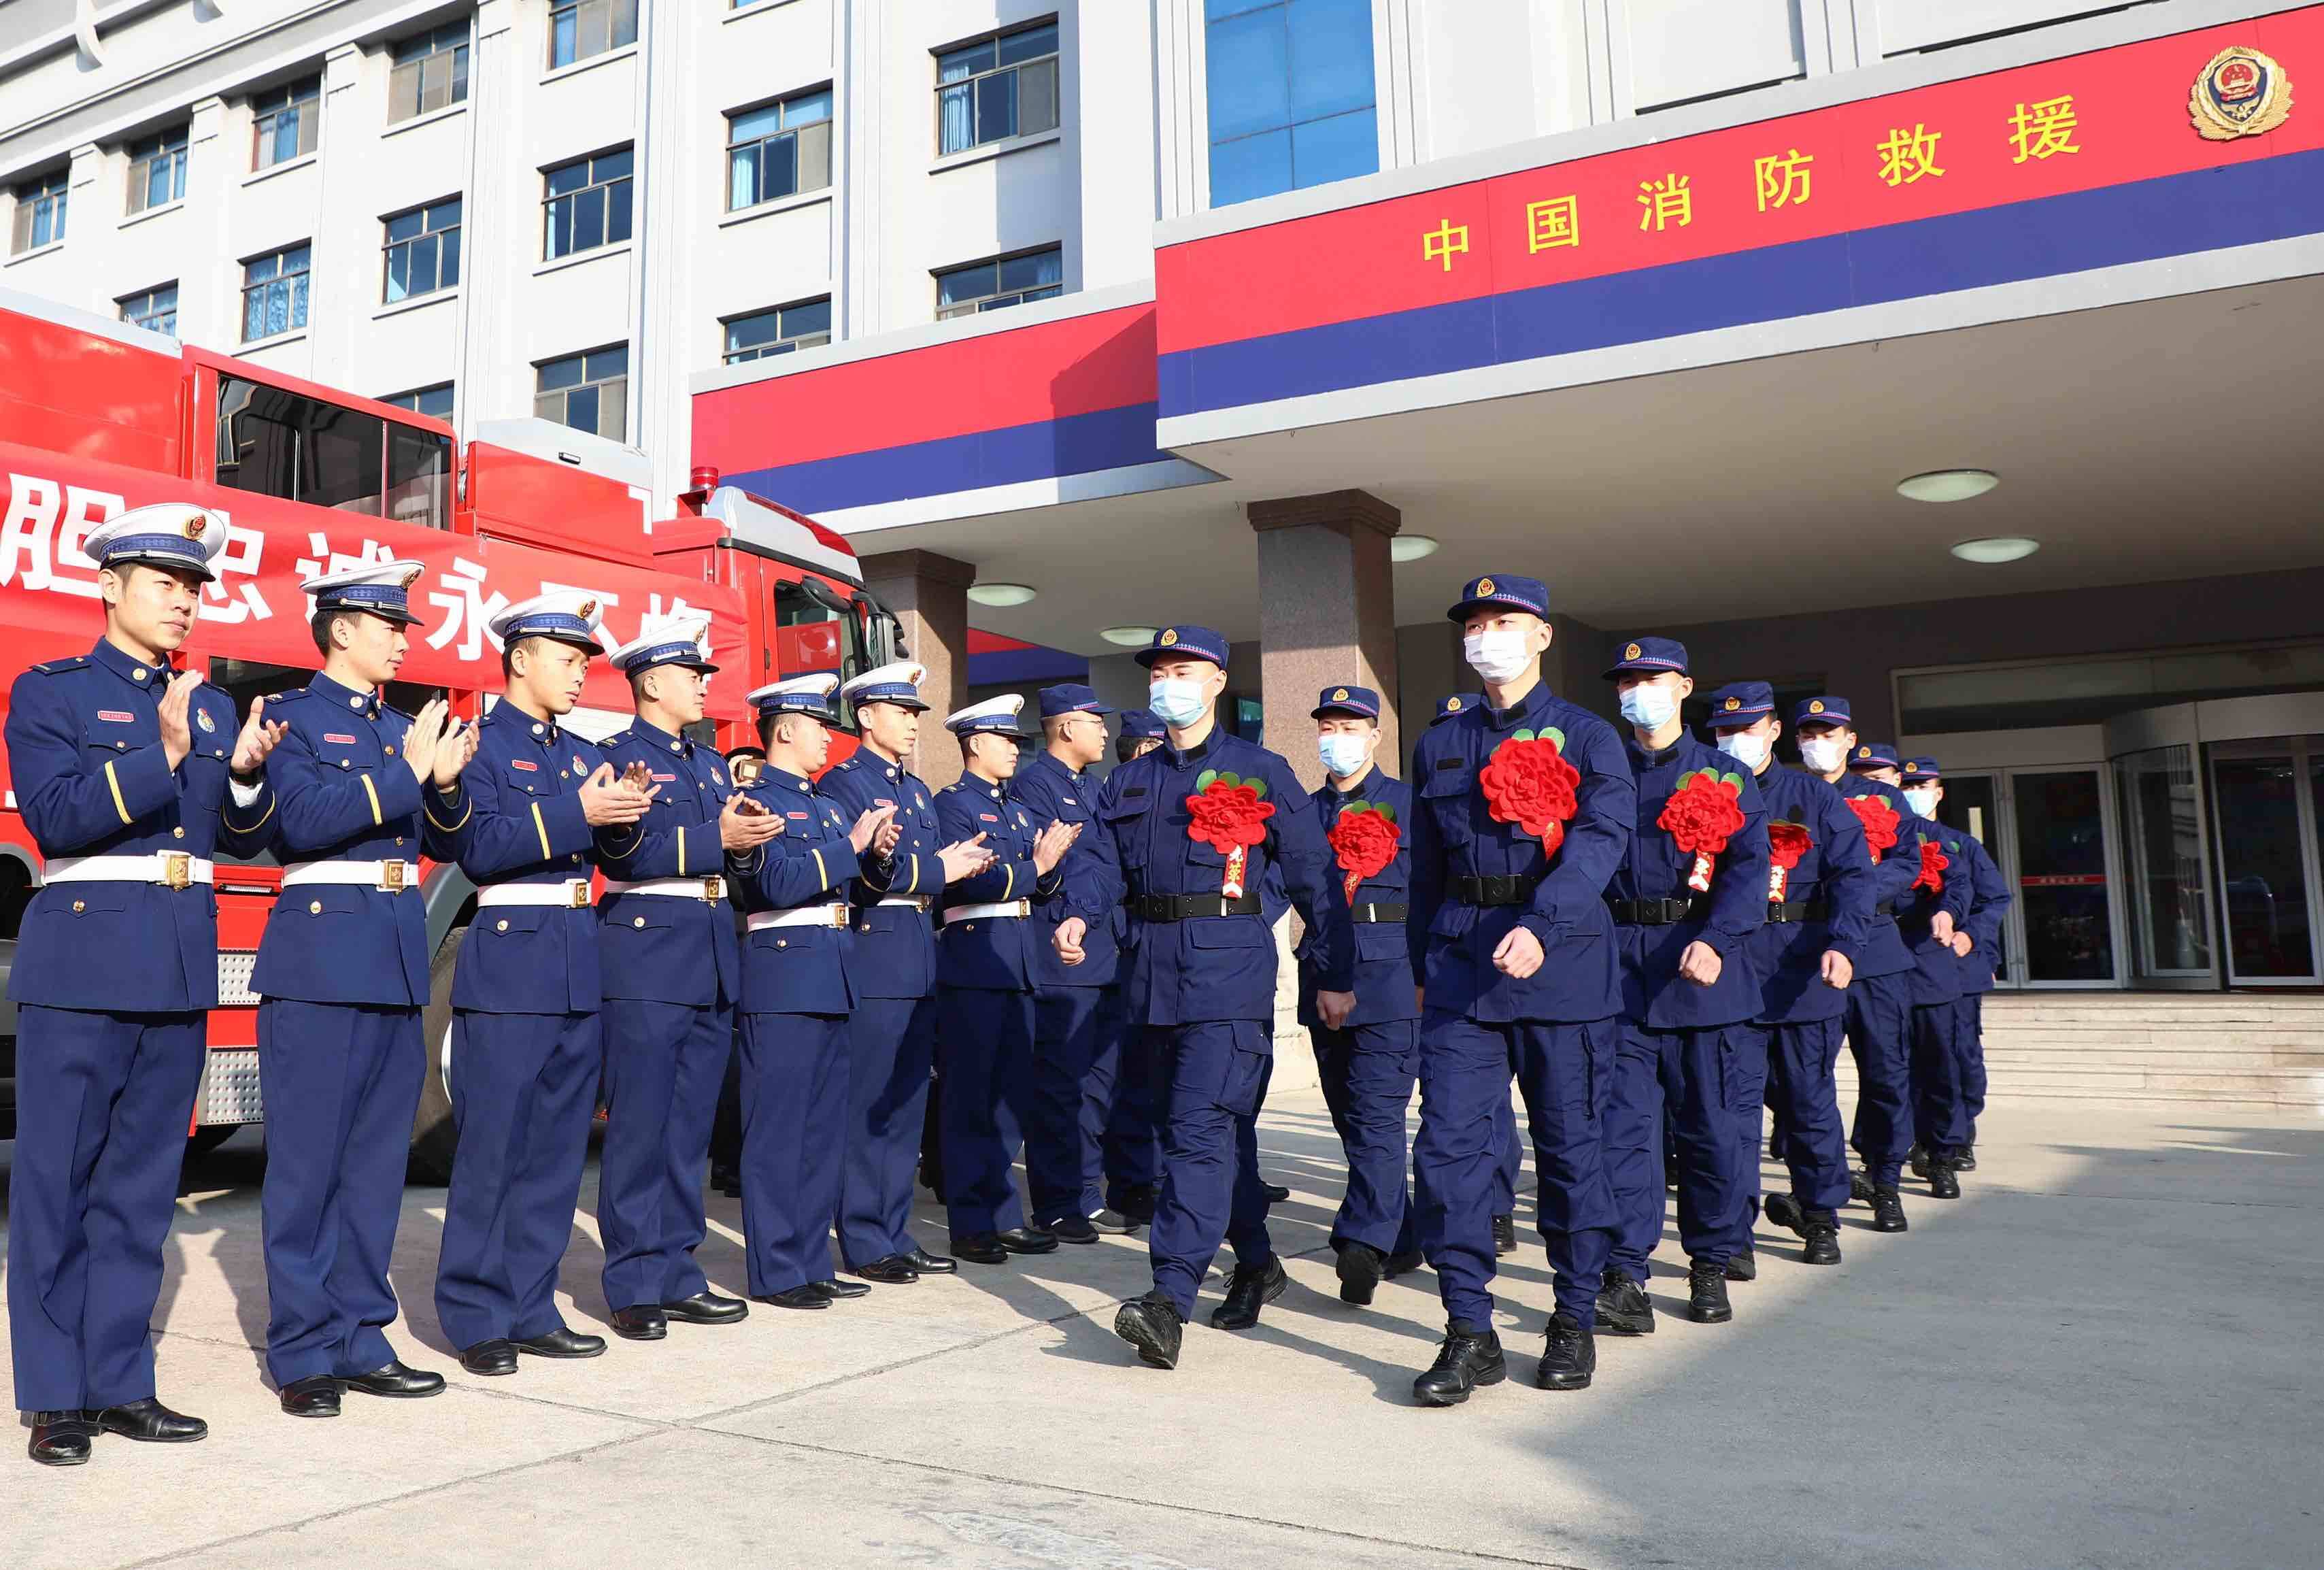 组图 | 威海消防举行2020年第三批新招消防员欢送仪式